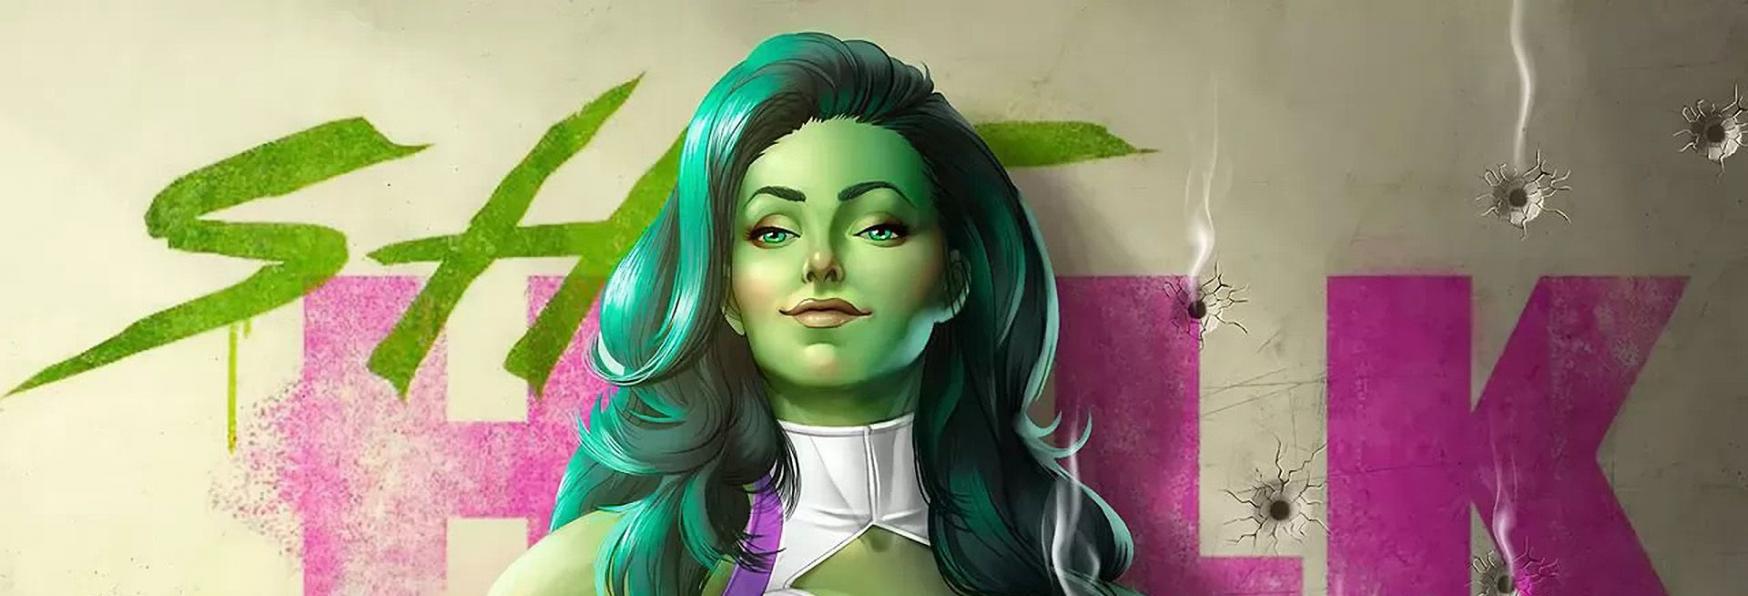 She-Hulk: Attorney at Law - Daredevil compare nel Trailer della Serie TV di Prossima Uscita